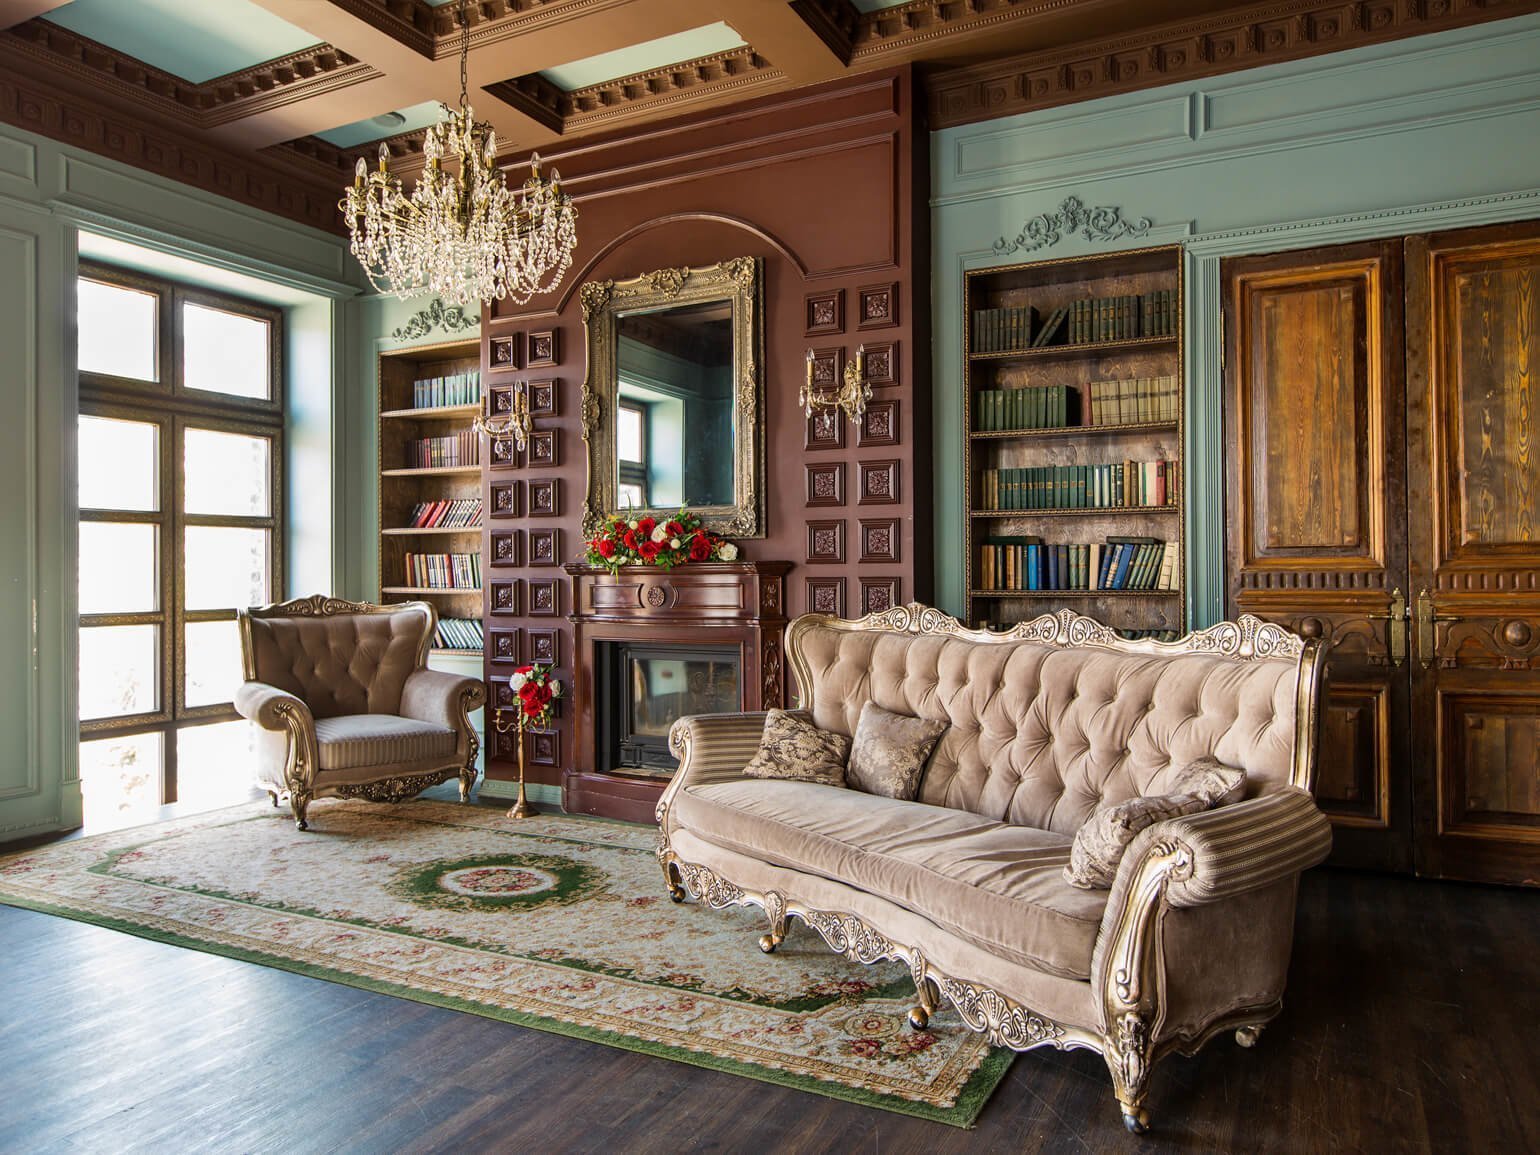 В комнате с камином бархатный диван и бархатное кресло цвета нюд с отделкой деревом золотого цвета, хрустальная люстра, персидский ковер, зеркало в золотой раме и стеллаж с книгами — дизайн интерьера в викторианском стиле